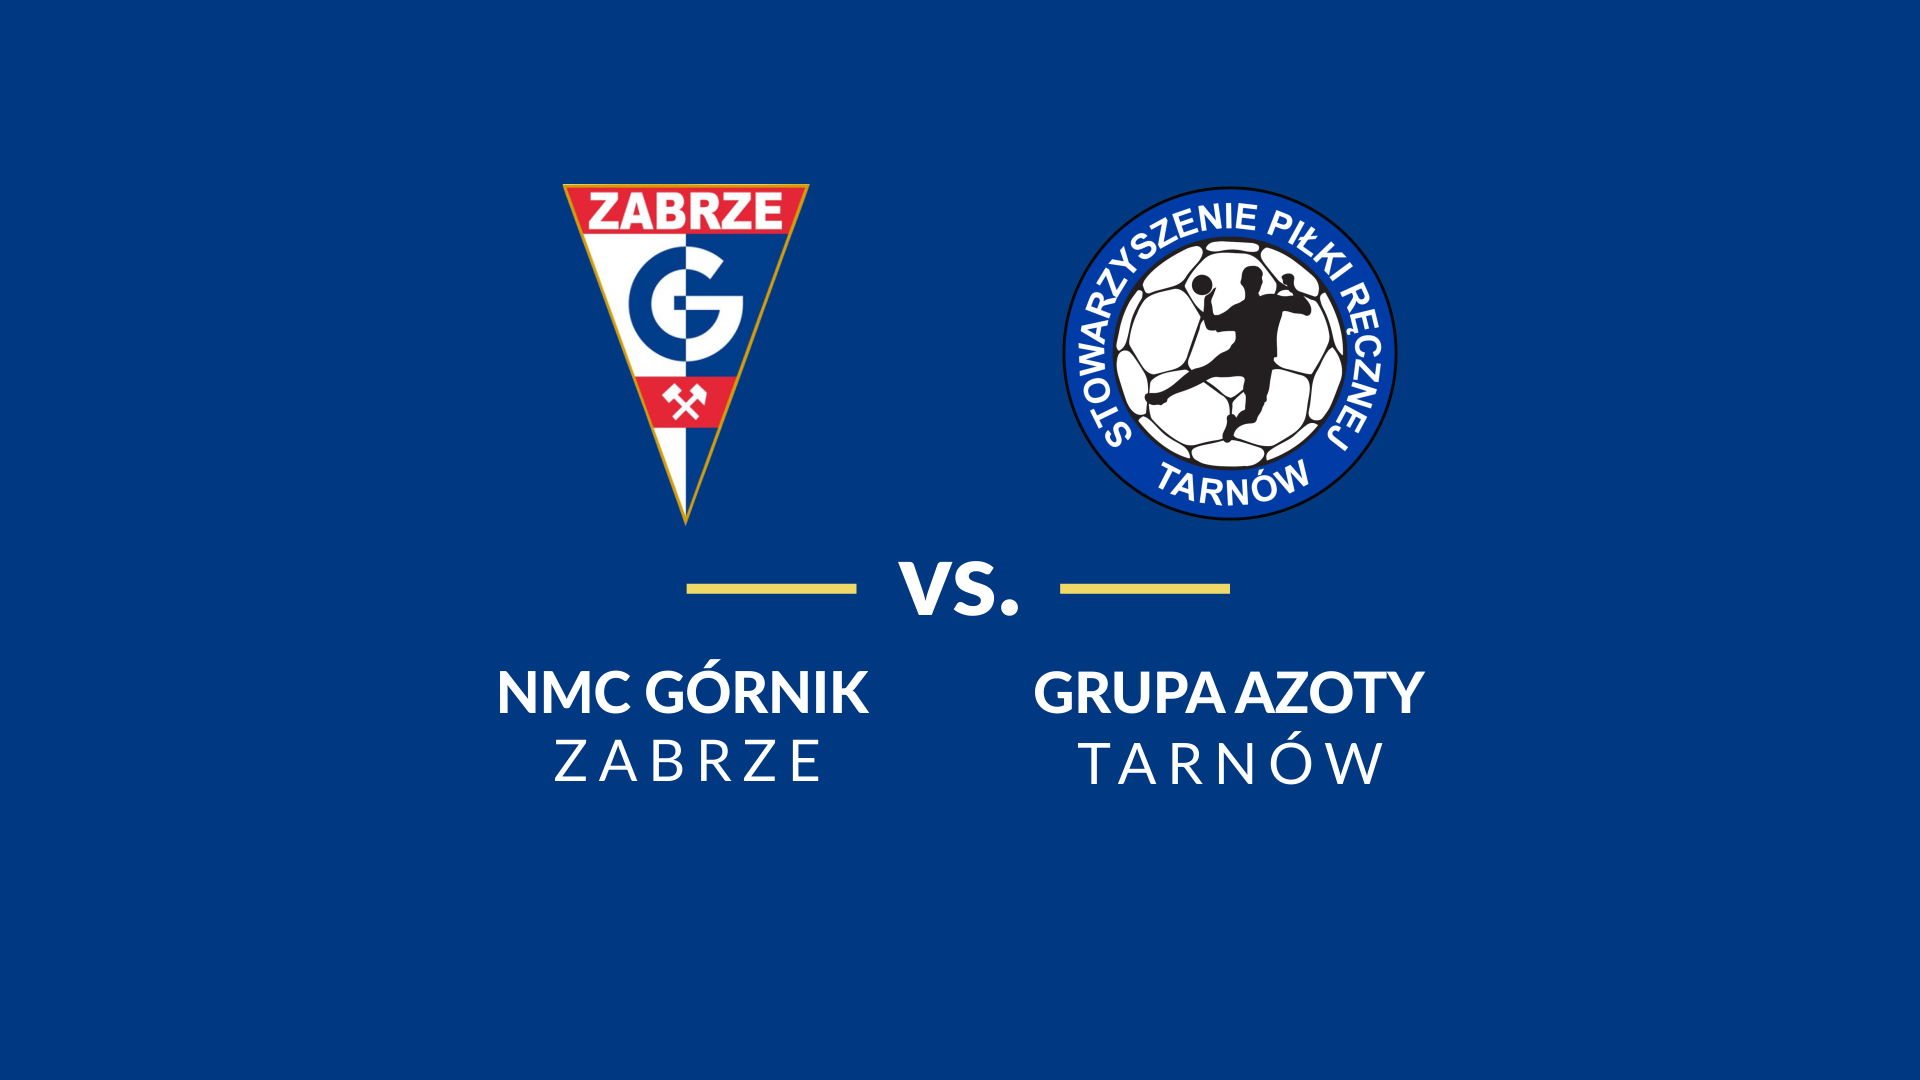 baner - logotypy Górnik Zabrze i Grupa Azoty Tarnów